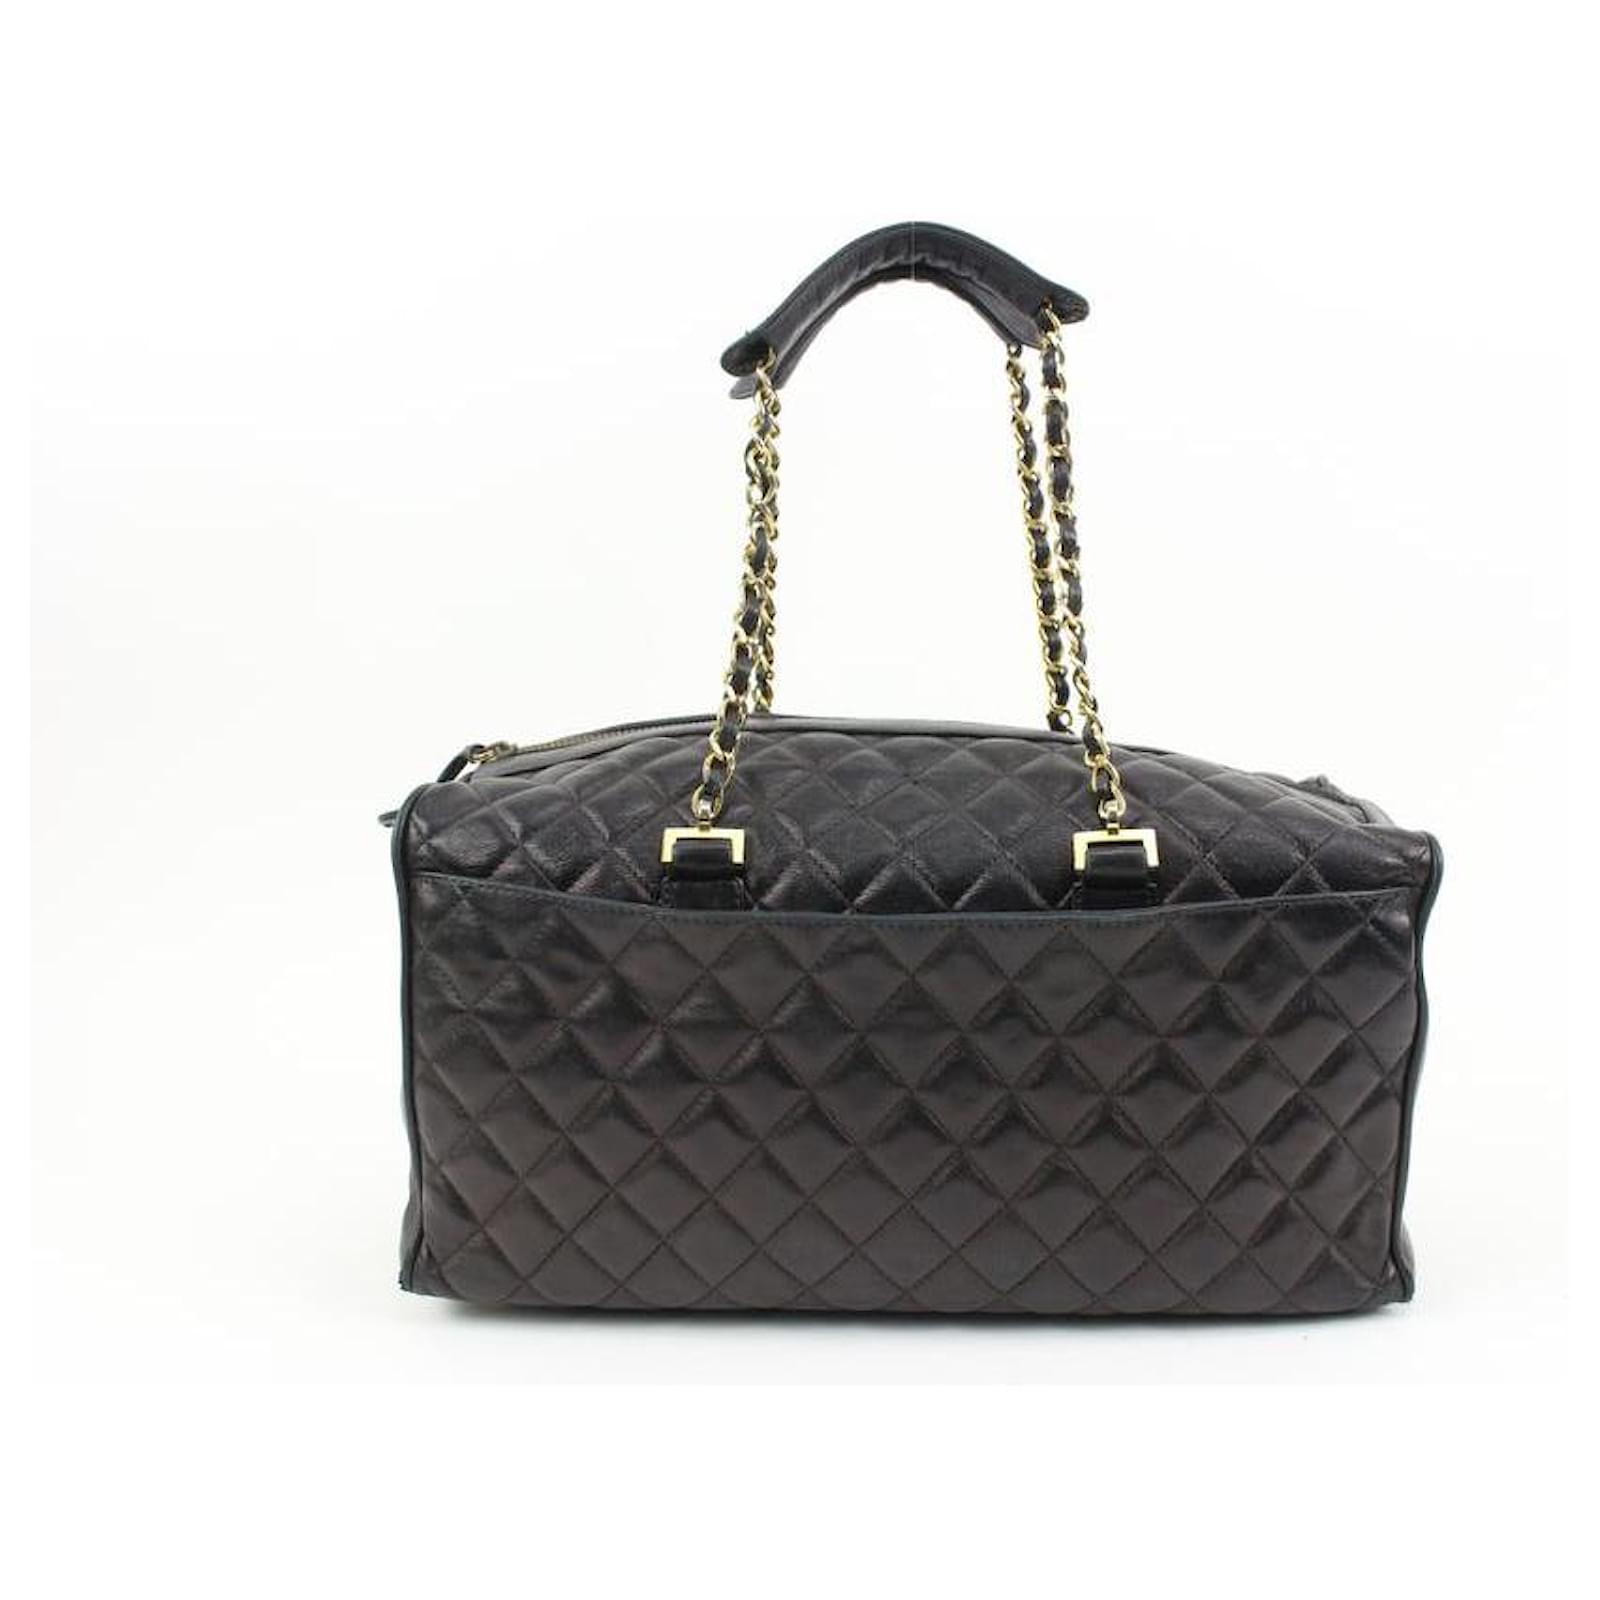 Vintage Chanel Quilted Shoulder Bag